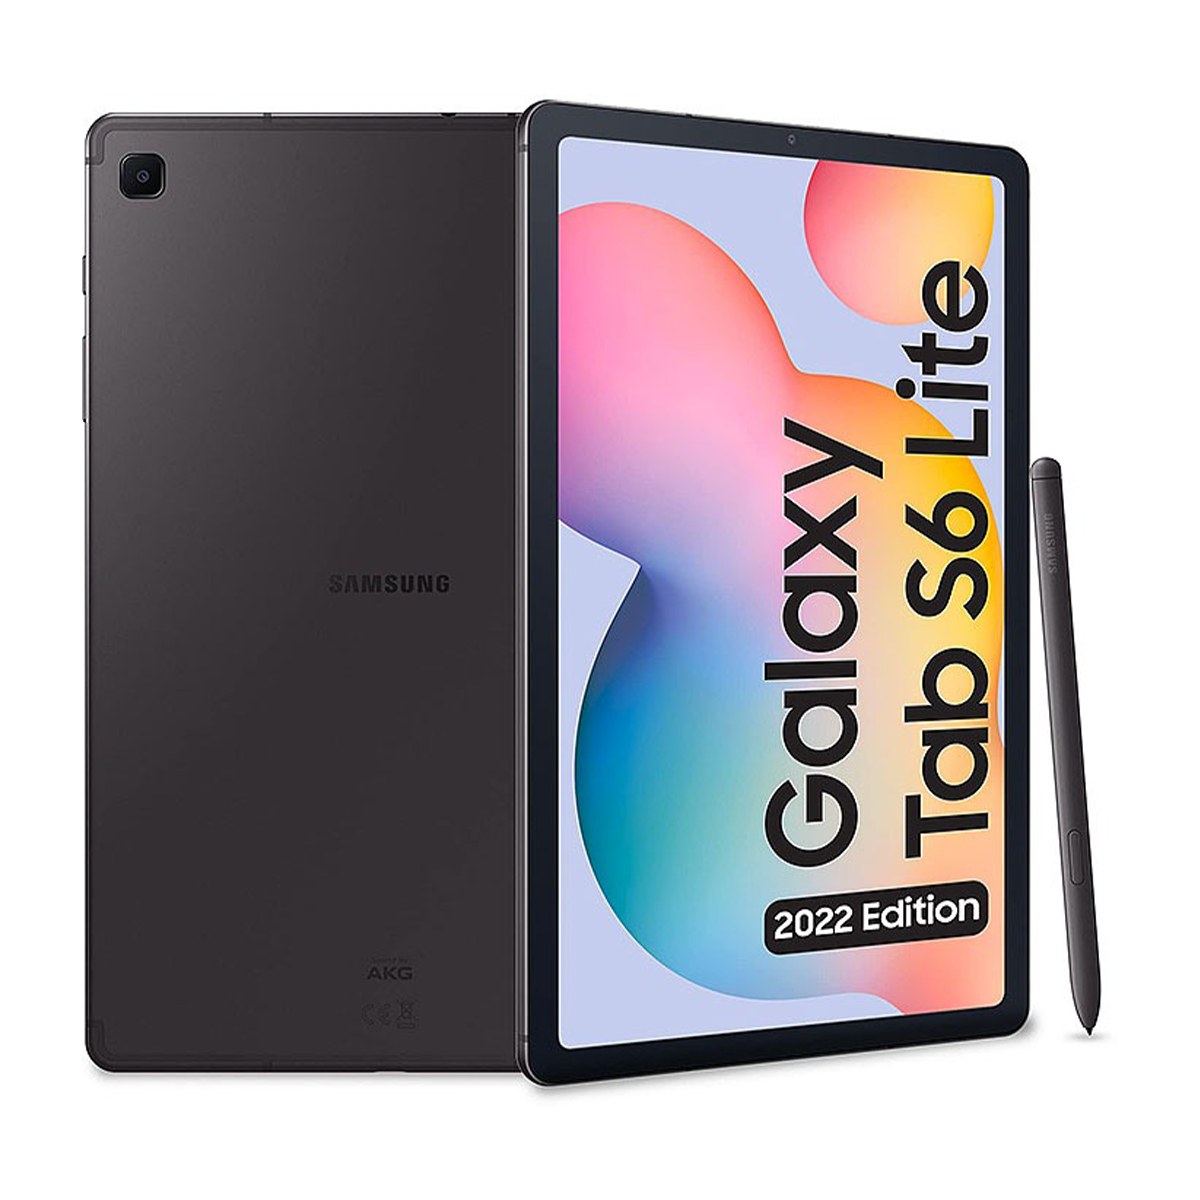  تبلت سامسونگ مدل Galaxy Tab S6 Lite (2022) - P619 - ظرفیت 64 گیگابایت - رم 4 گیگابایت-small-image